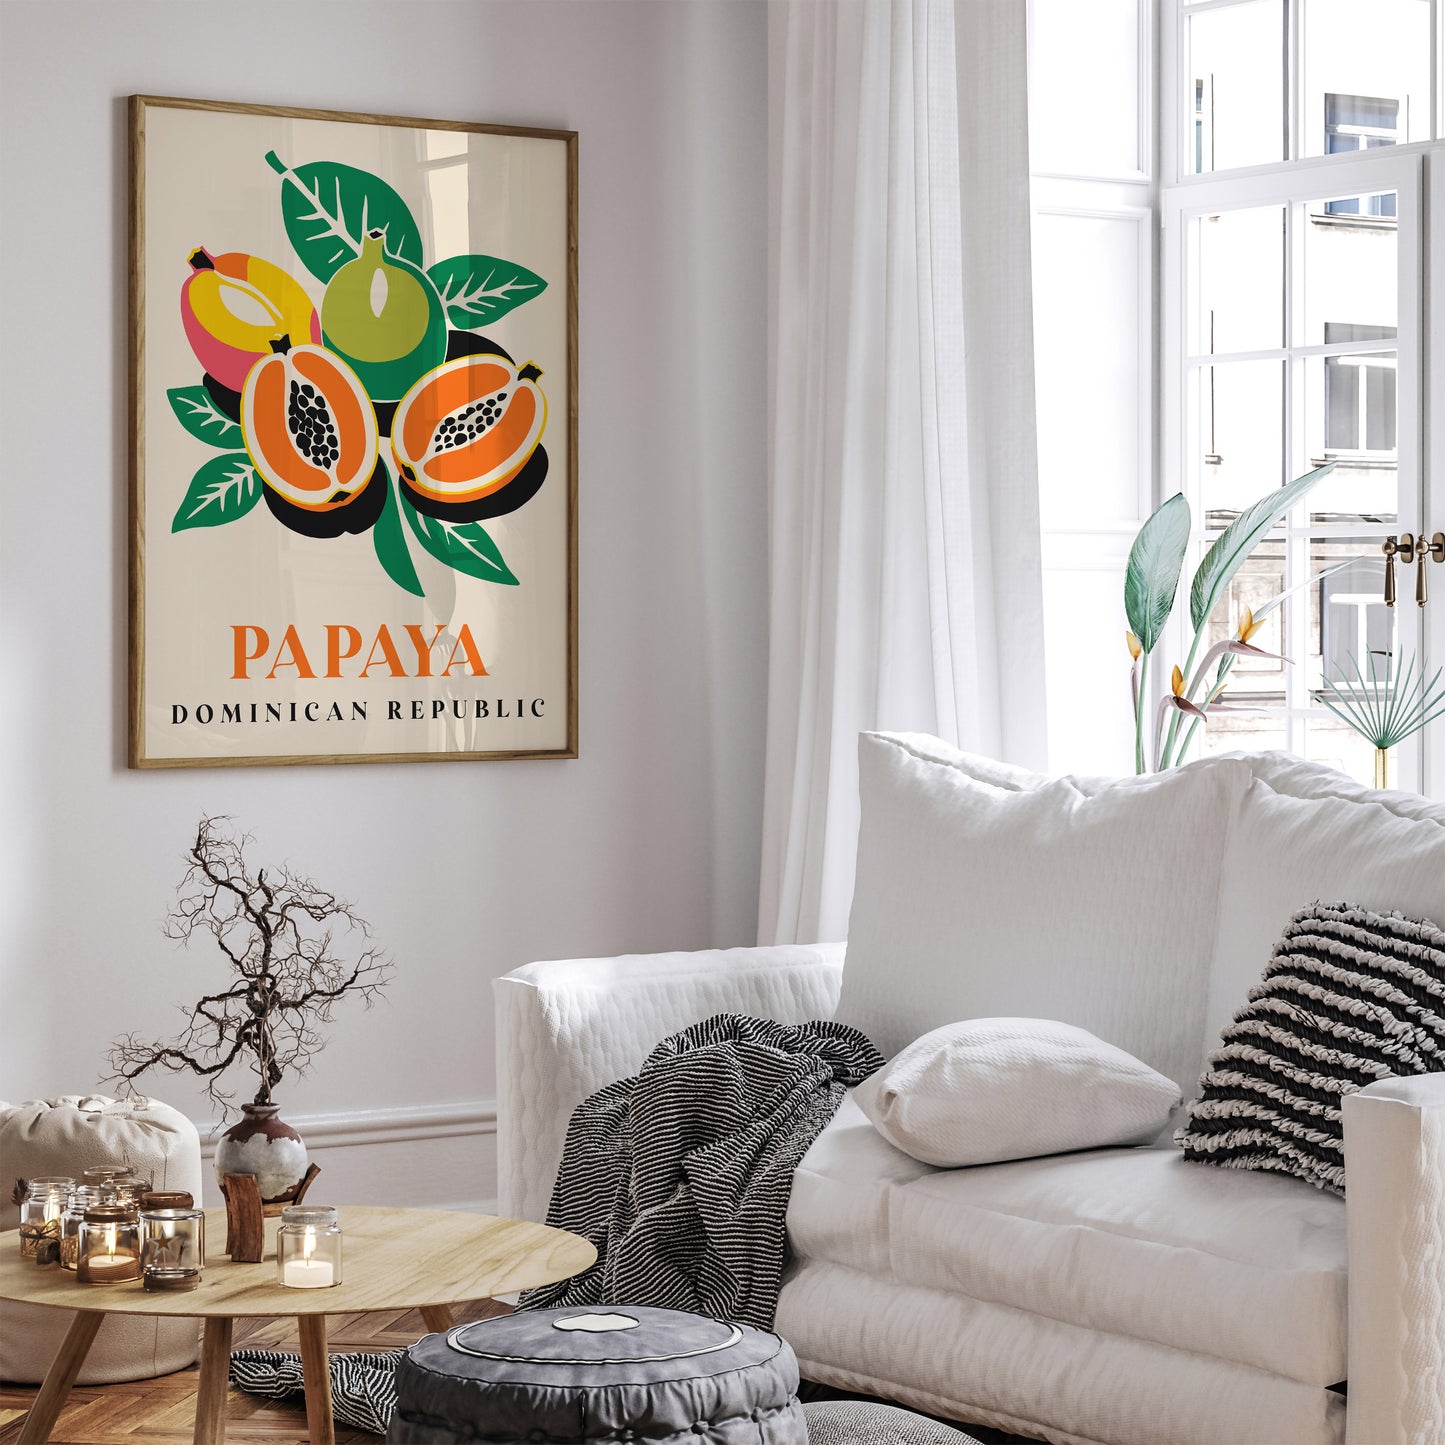 Papaya Tropical Fruit Poster